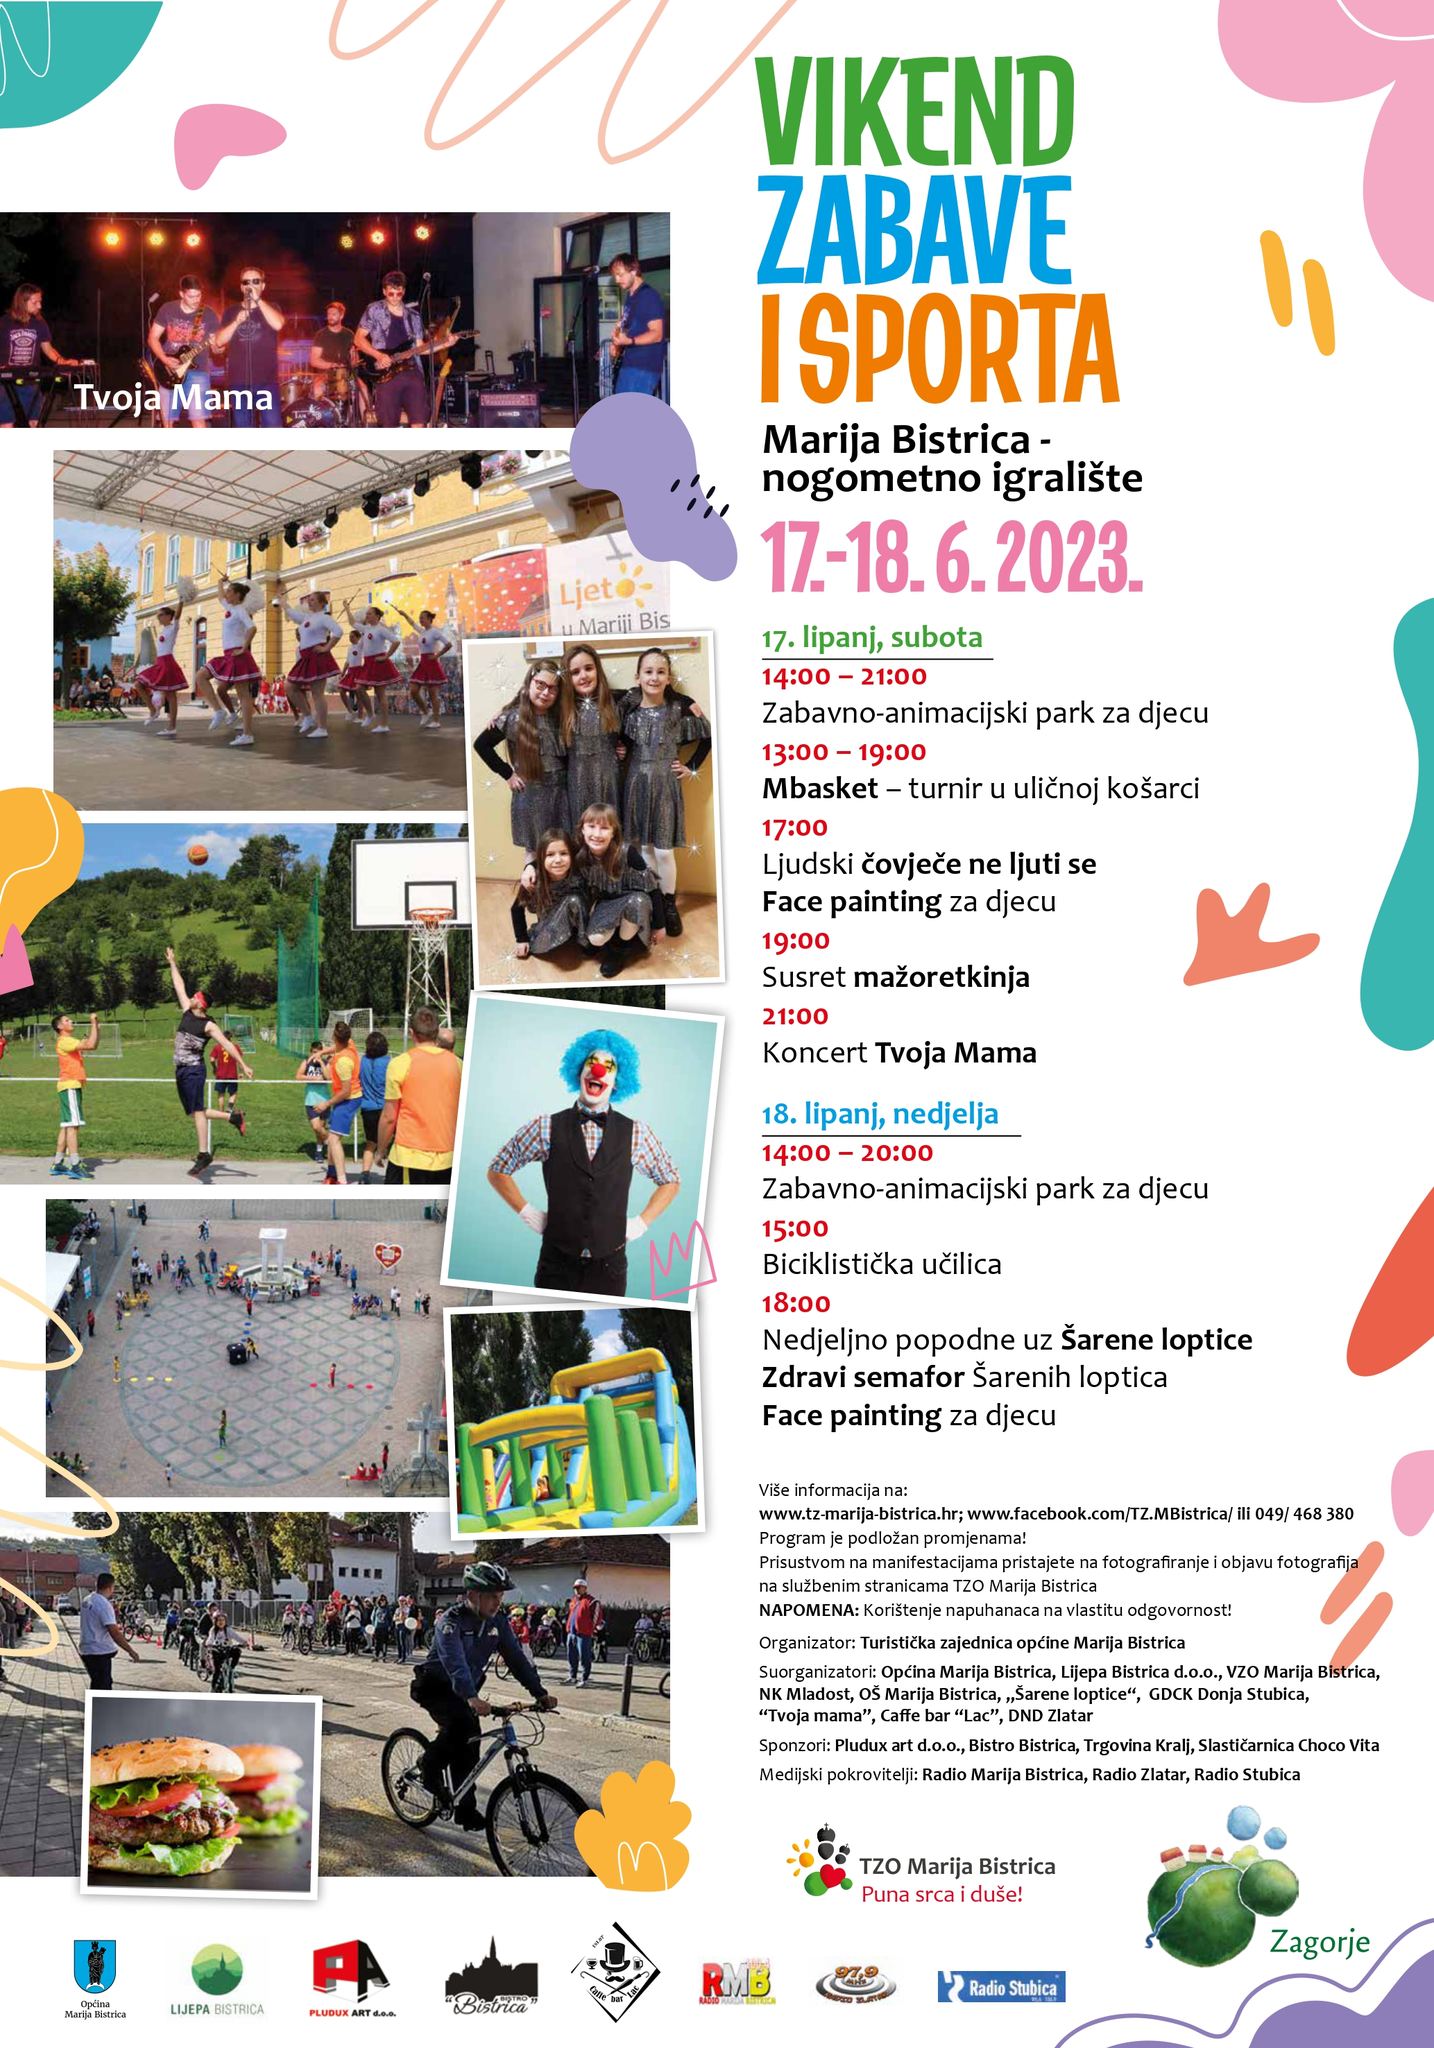 Vikend zabave i sporta u Mariji Bistrici